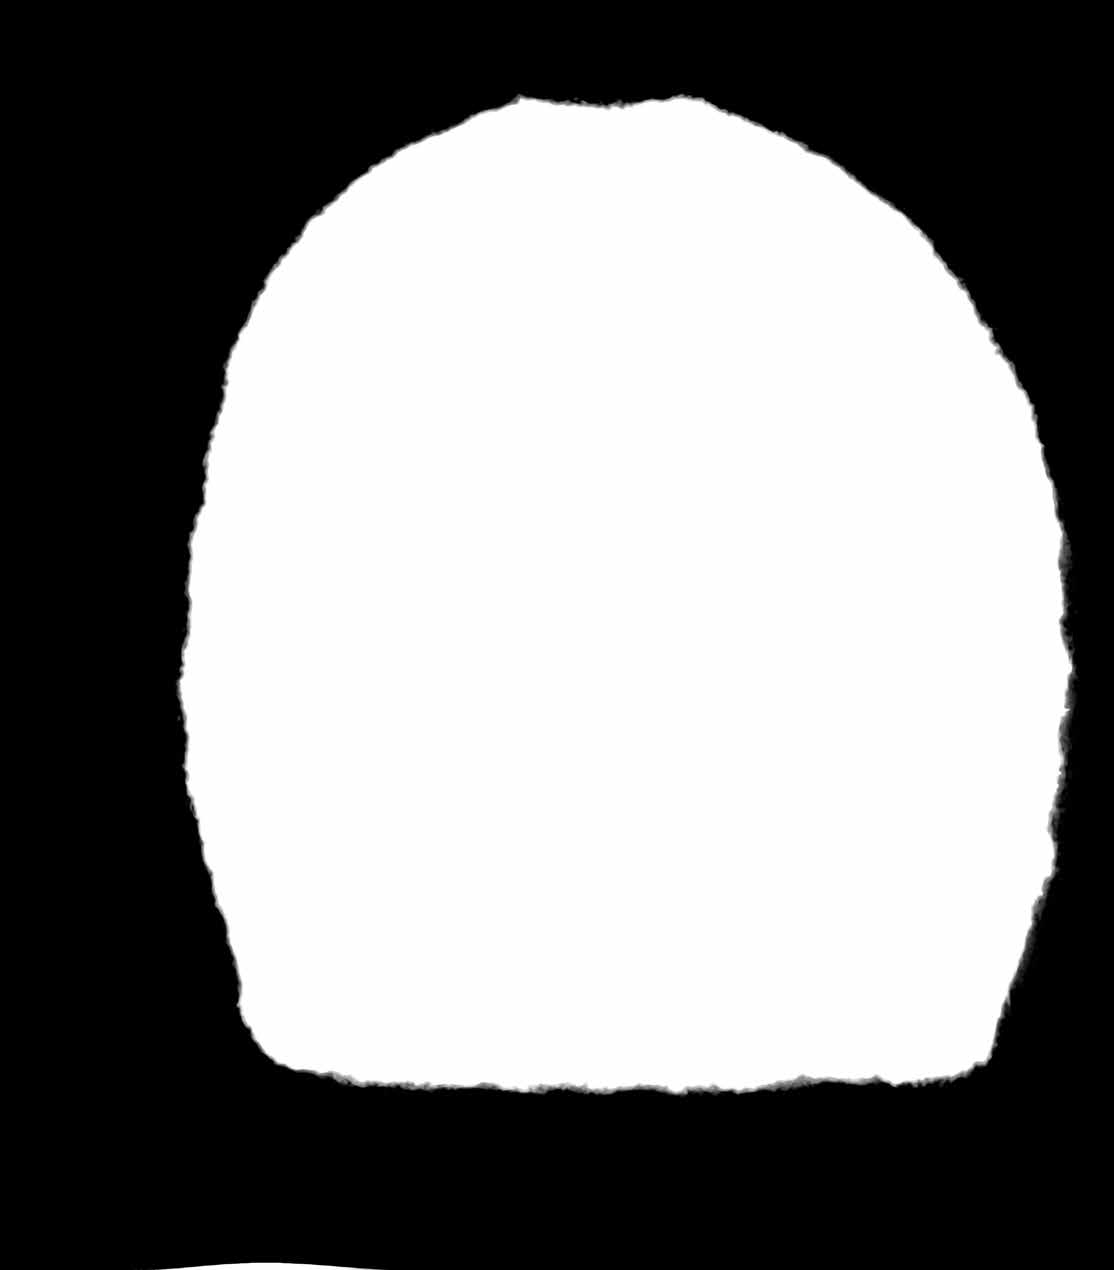 HÄKELTUCH (50 x 140 cm) MOHAIRMÜTZE IN GRÖSSE S / M / L SIE BRAUCHEN: 275 g Nuderosé Farbe 523 Mohair Haze (70 % Mohair, 30 % Wolle, Lauflänge 102 m/25 g) von Rowan. Häkelnadel Nr.